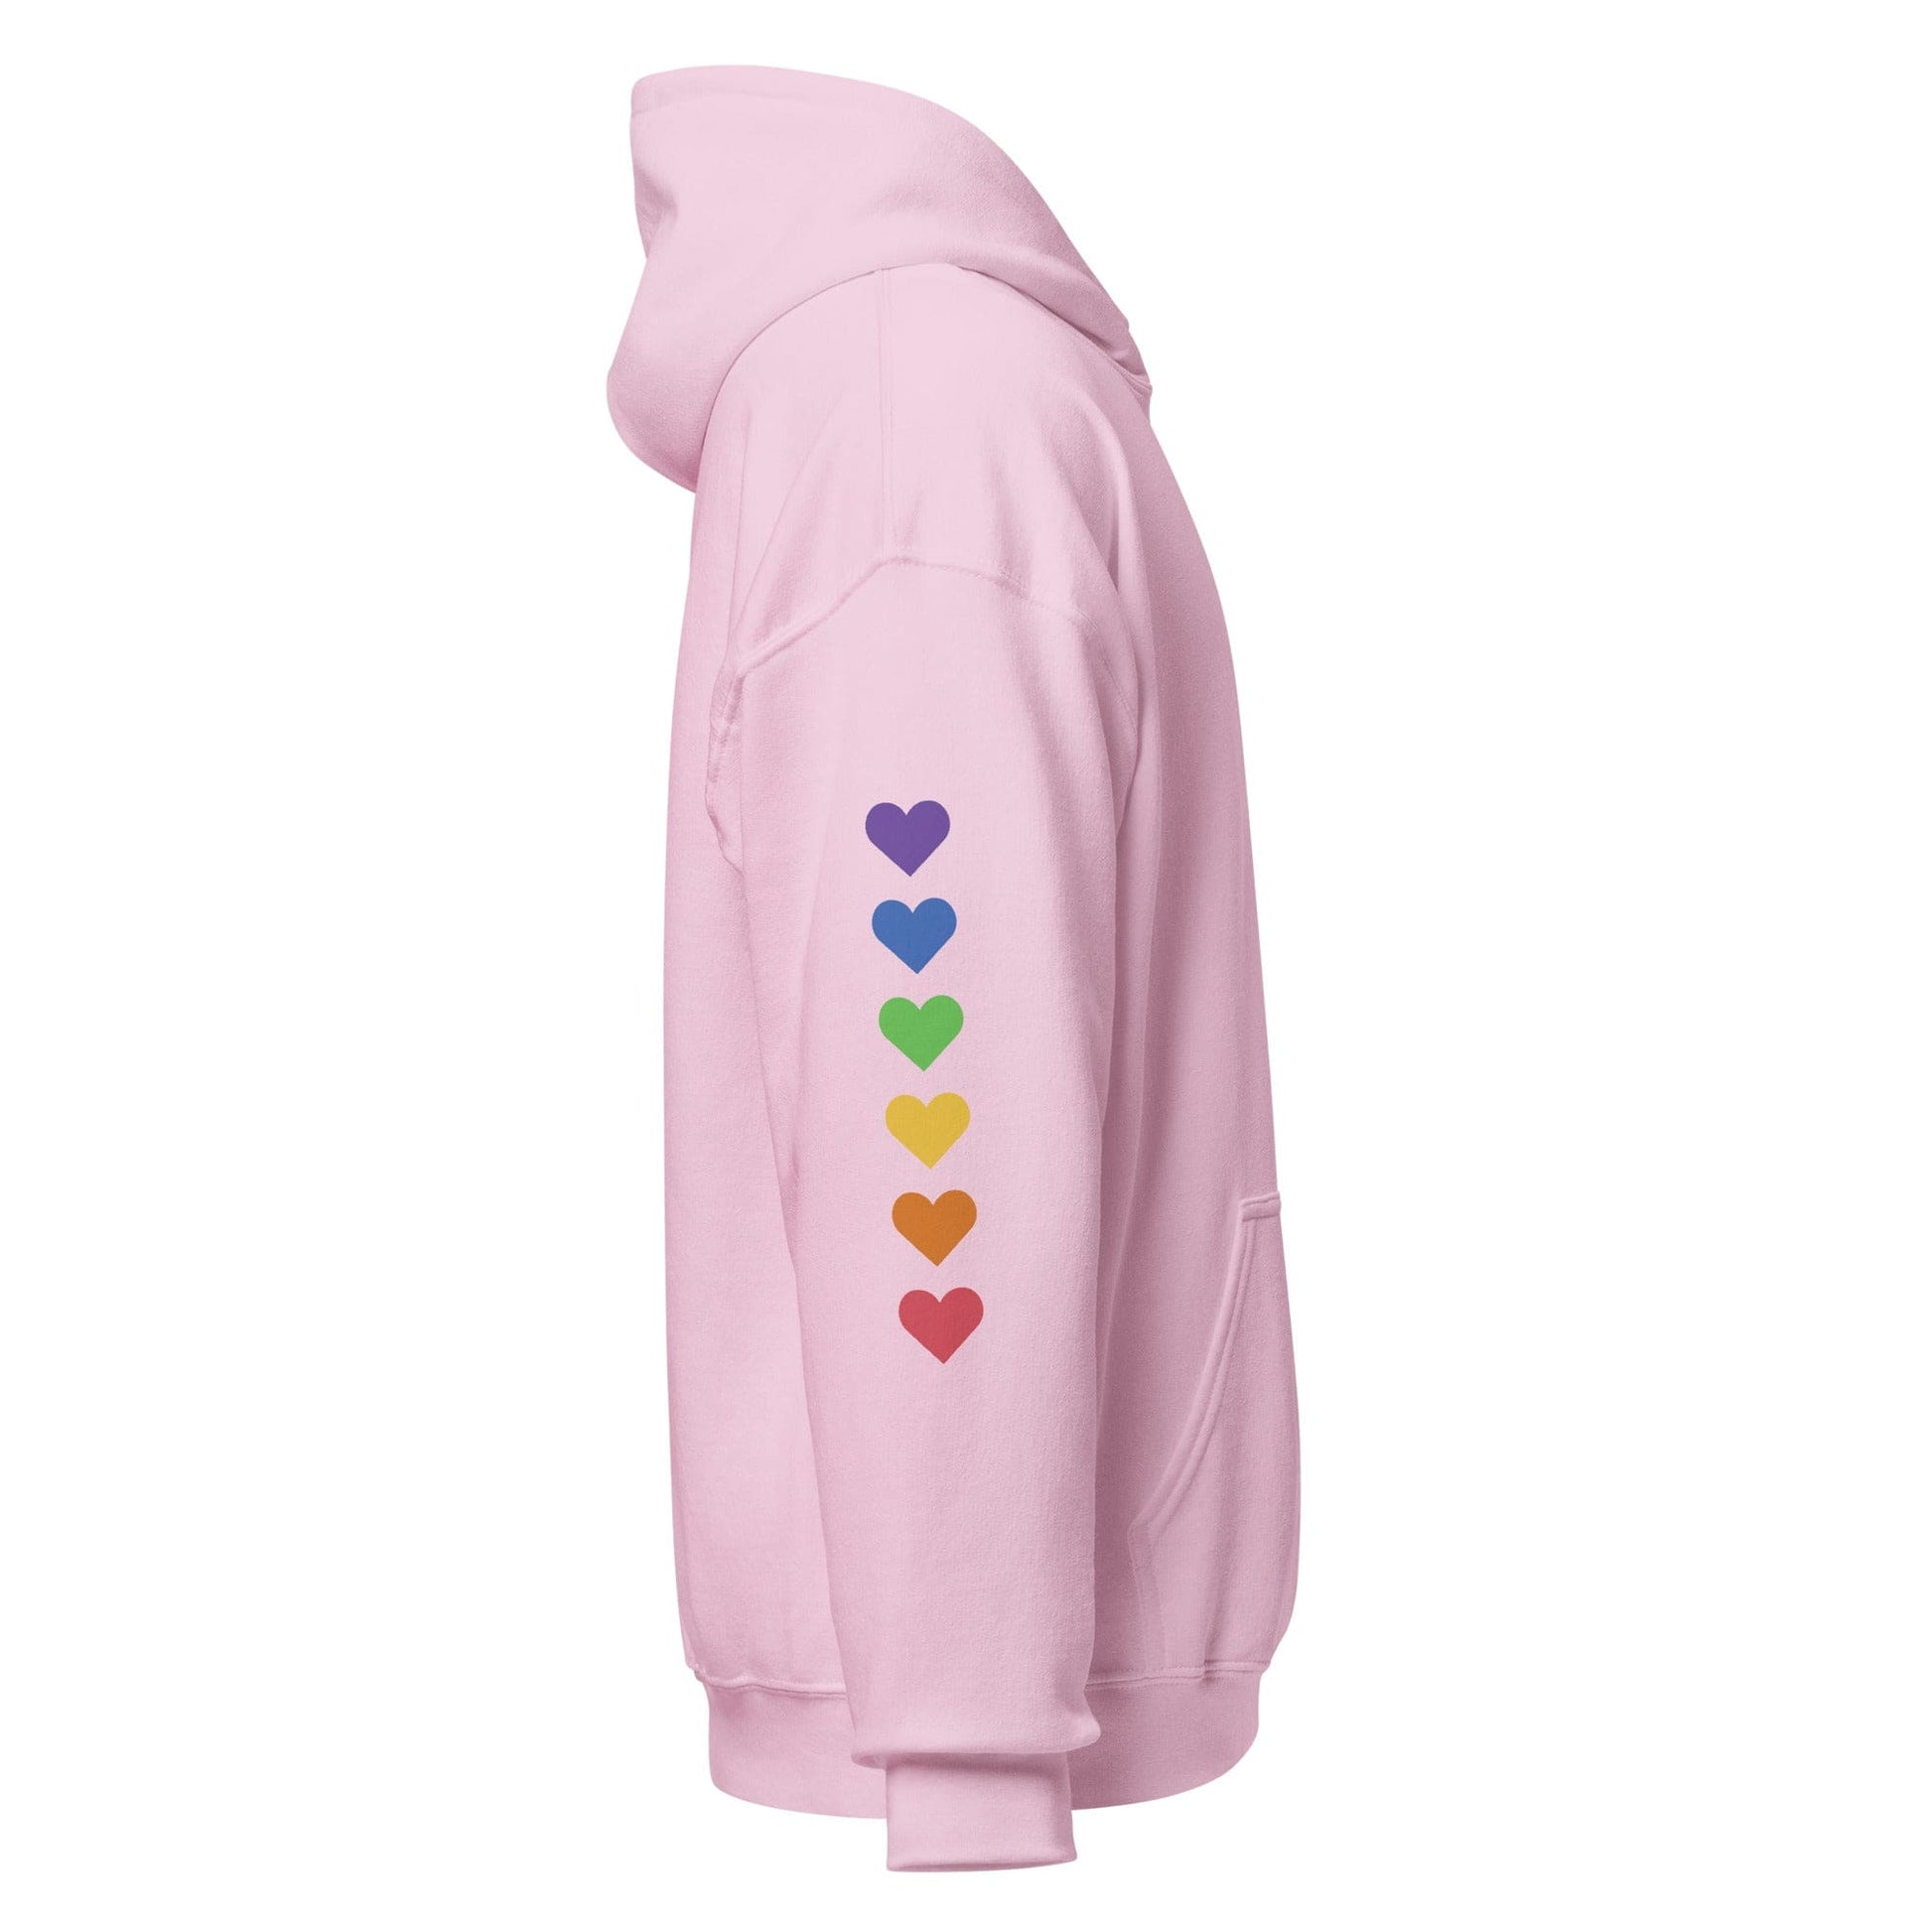 right-light-pink-genderless-hearts-pride-heavy-blend-hoodie-by-feminist-define